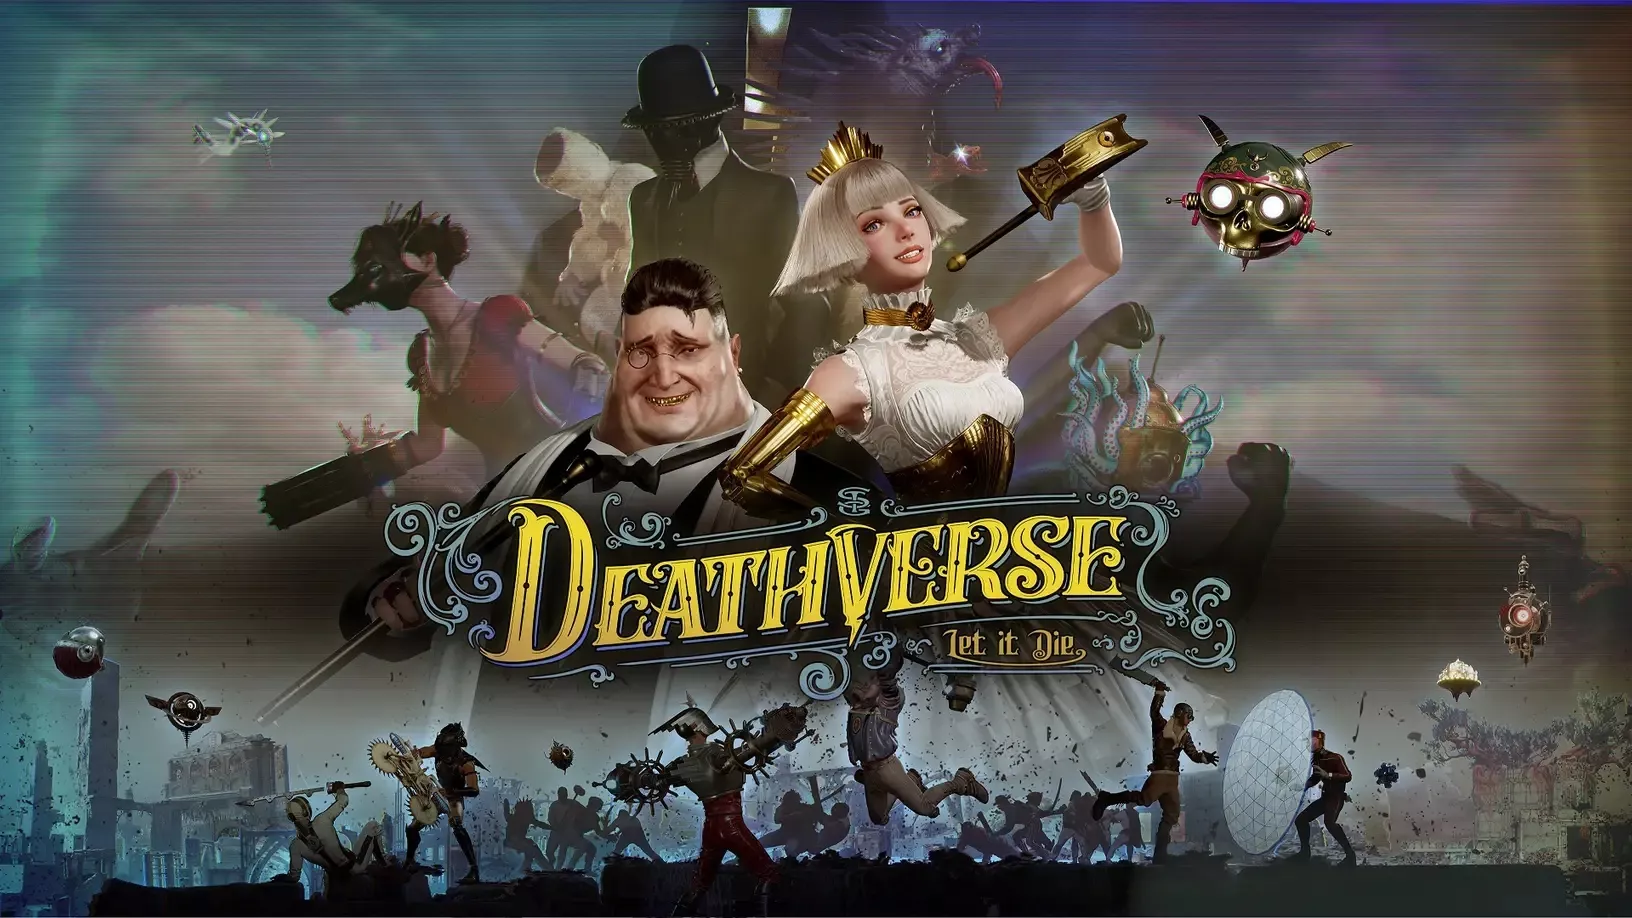 Deathverse: Let It Die spielt 100 Jahre nach Let It Die Heropic